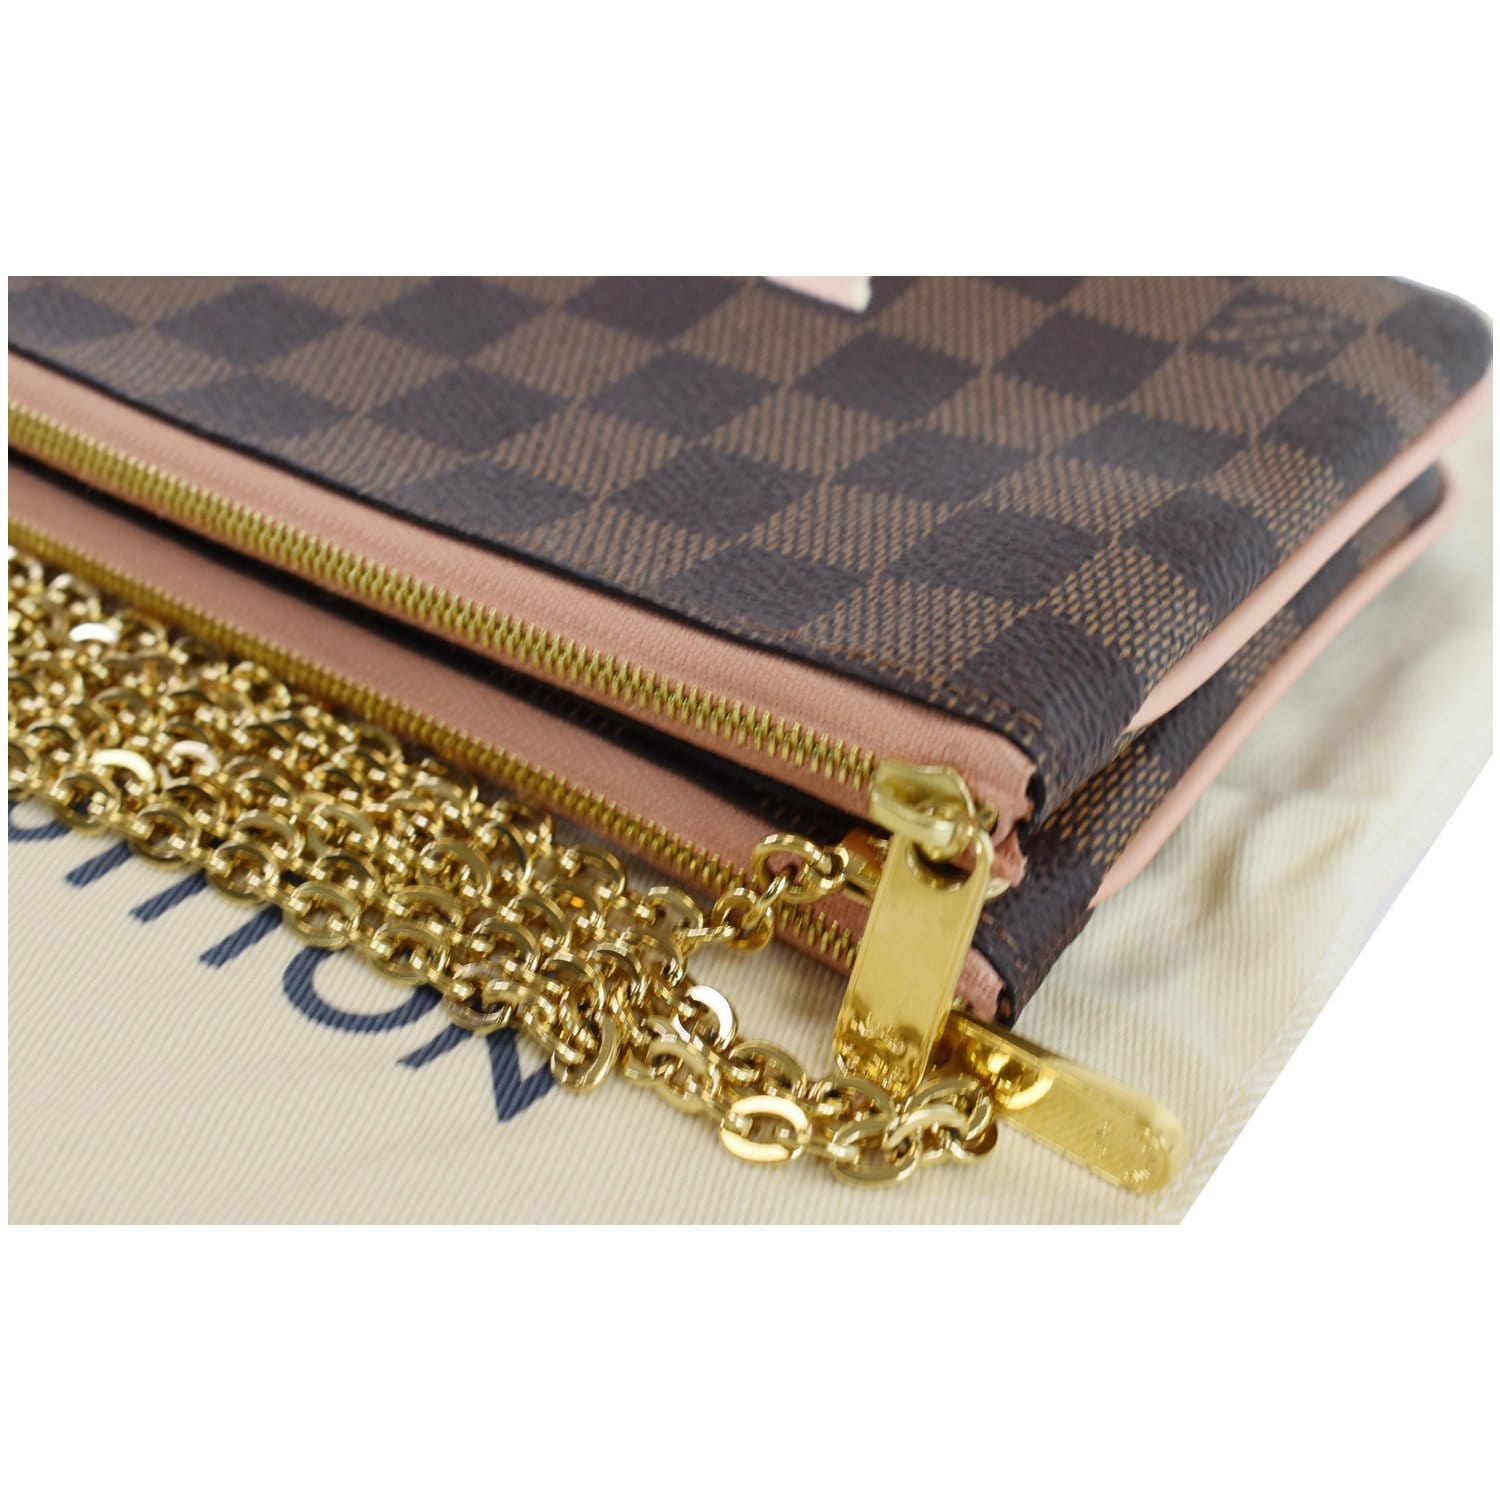 Louis Vuitton Damier Azur Double Zip Pochette, Louis Vuitton Handbags